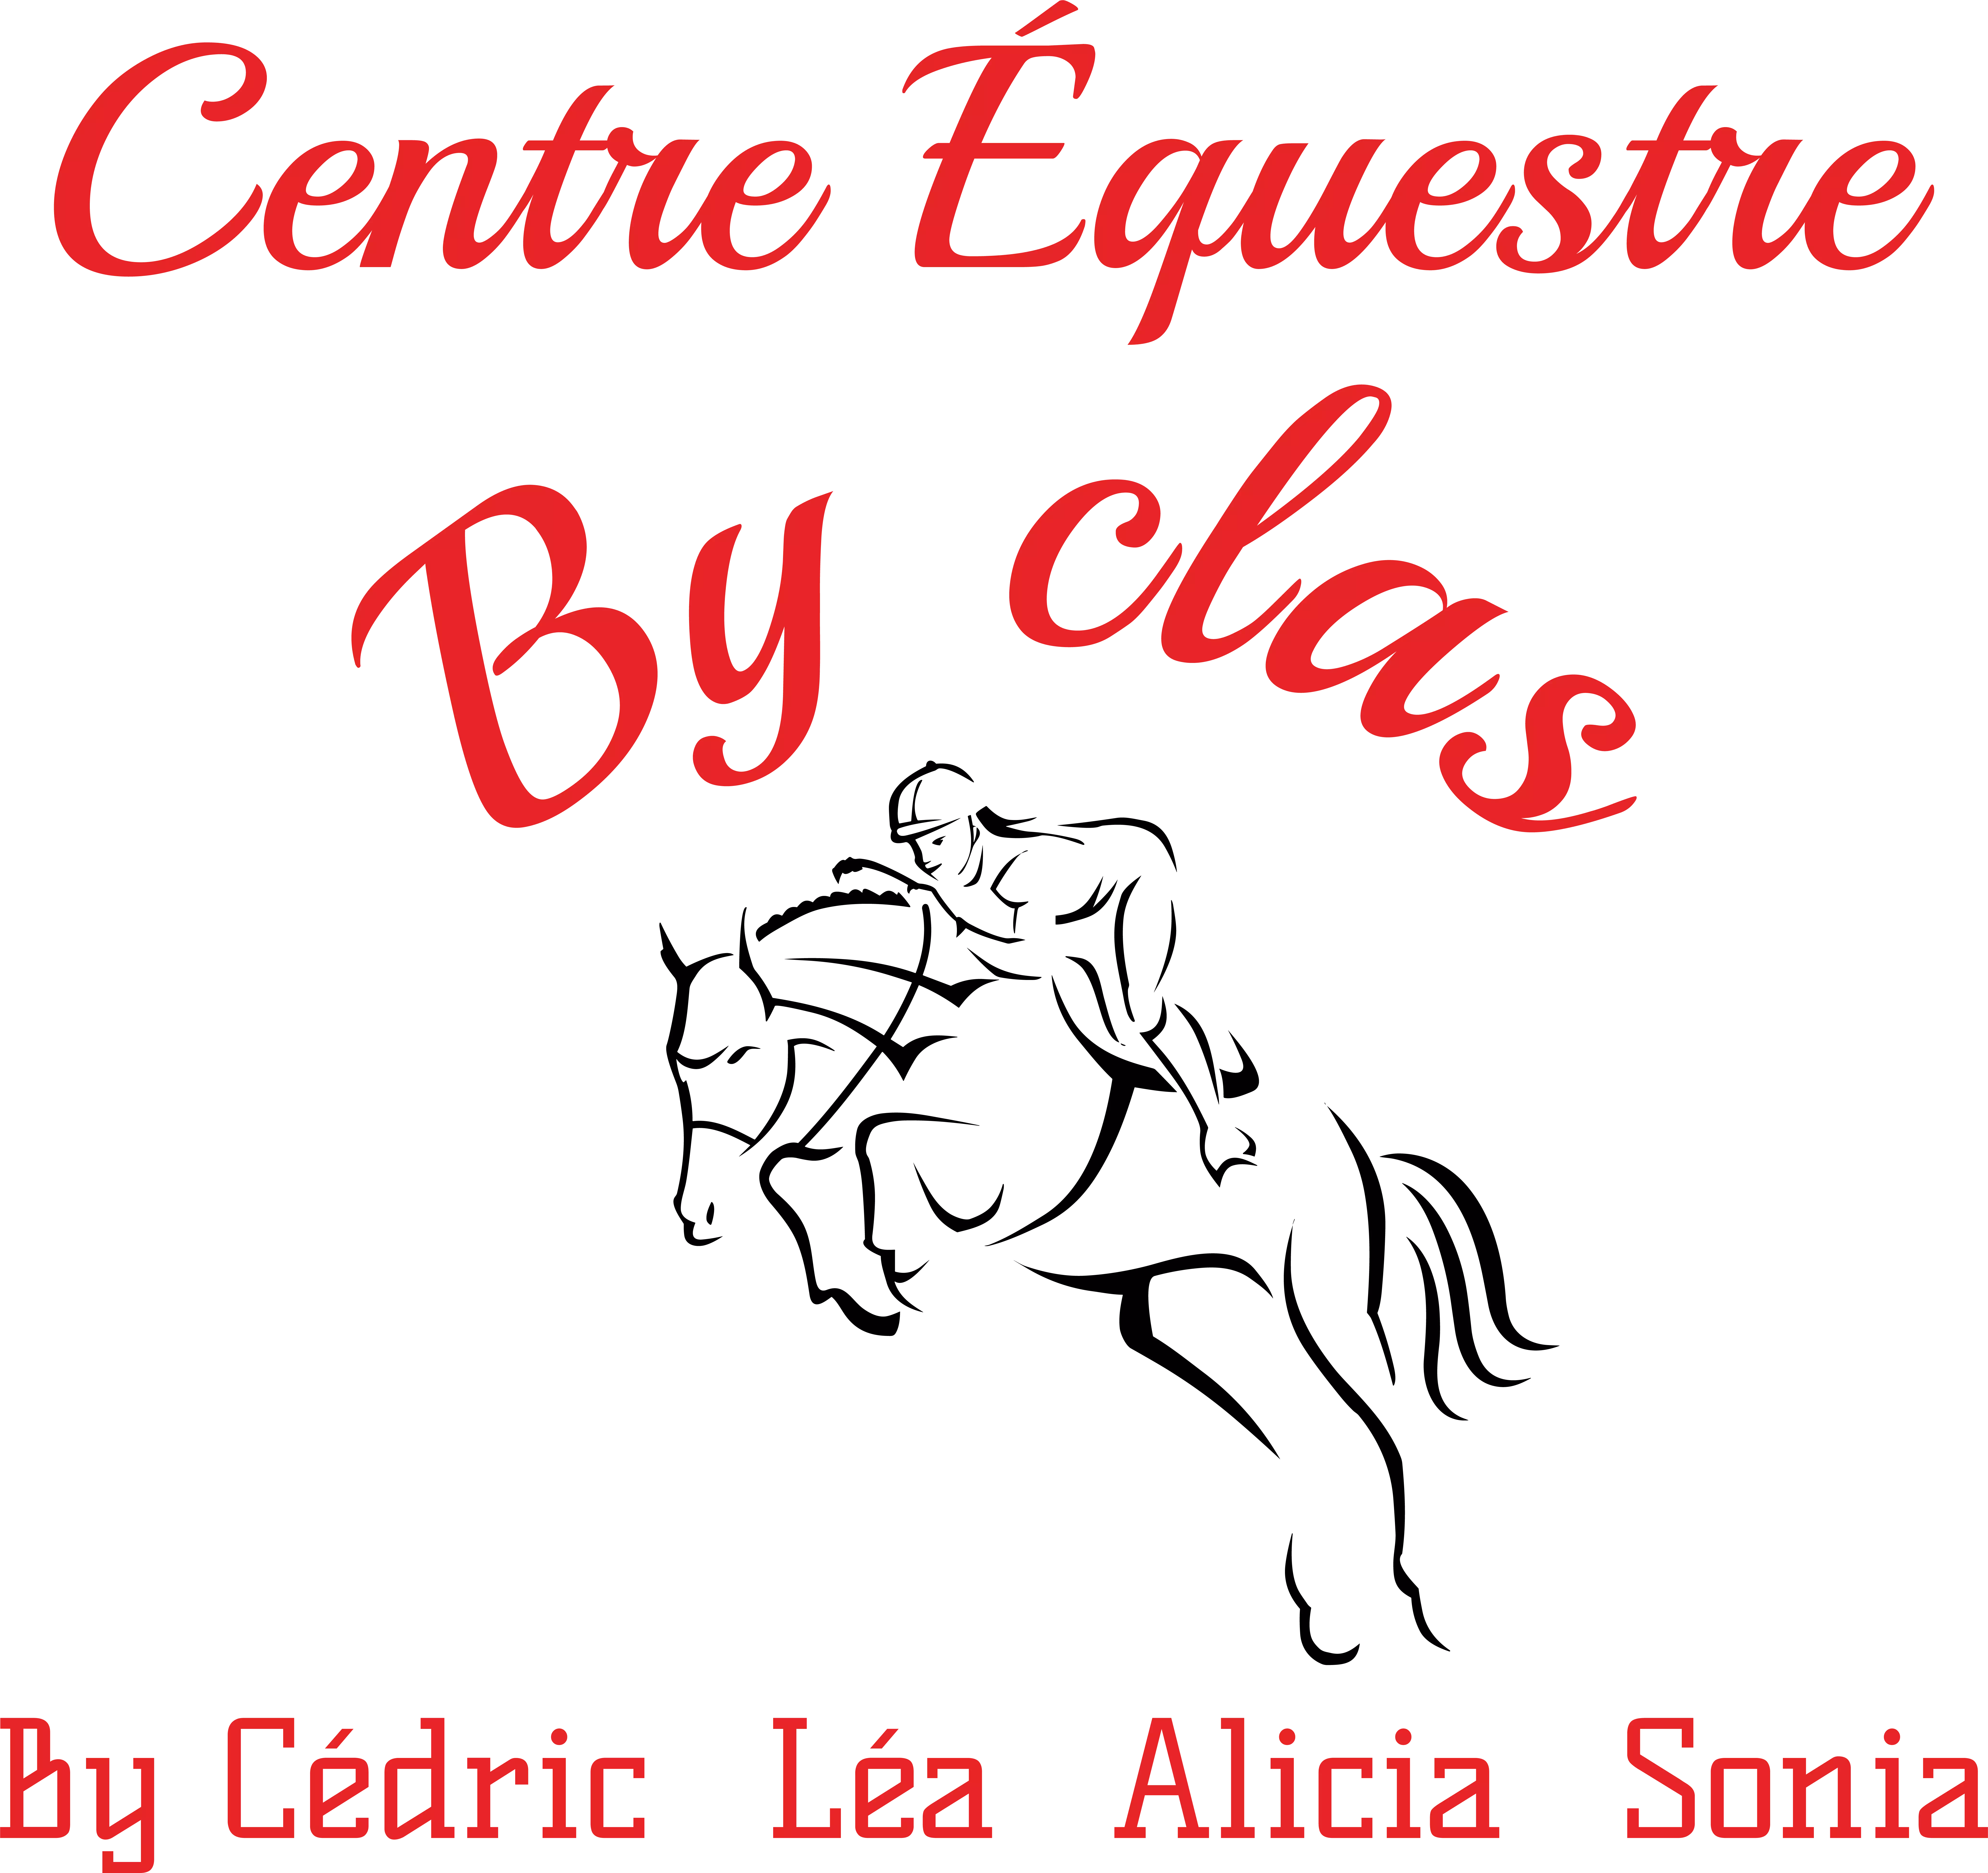 03 - Centre Equestre By CLAS